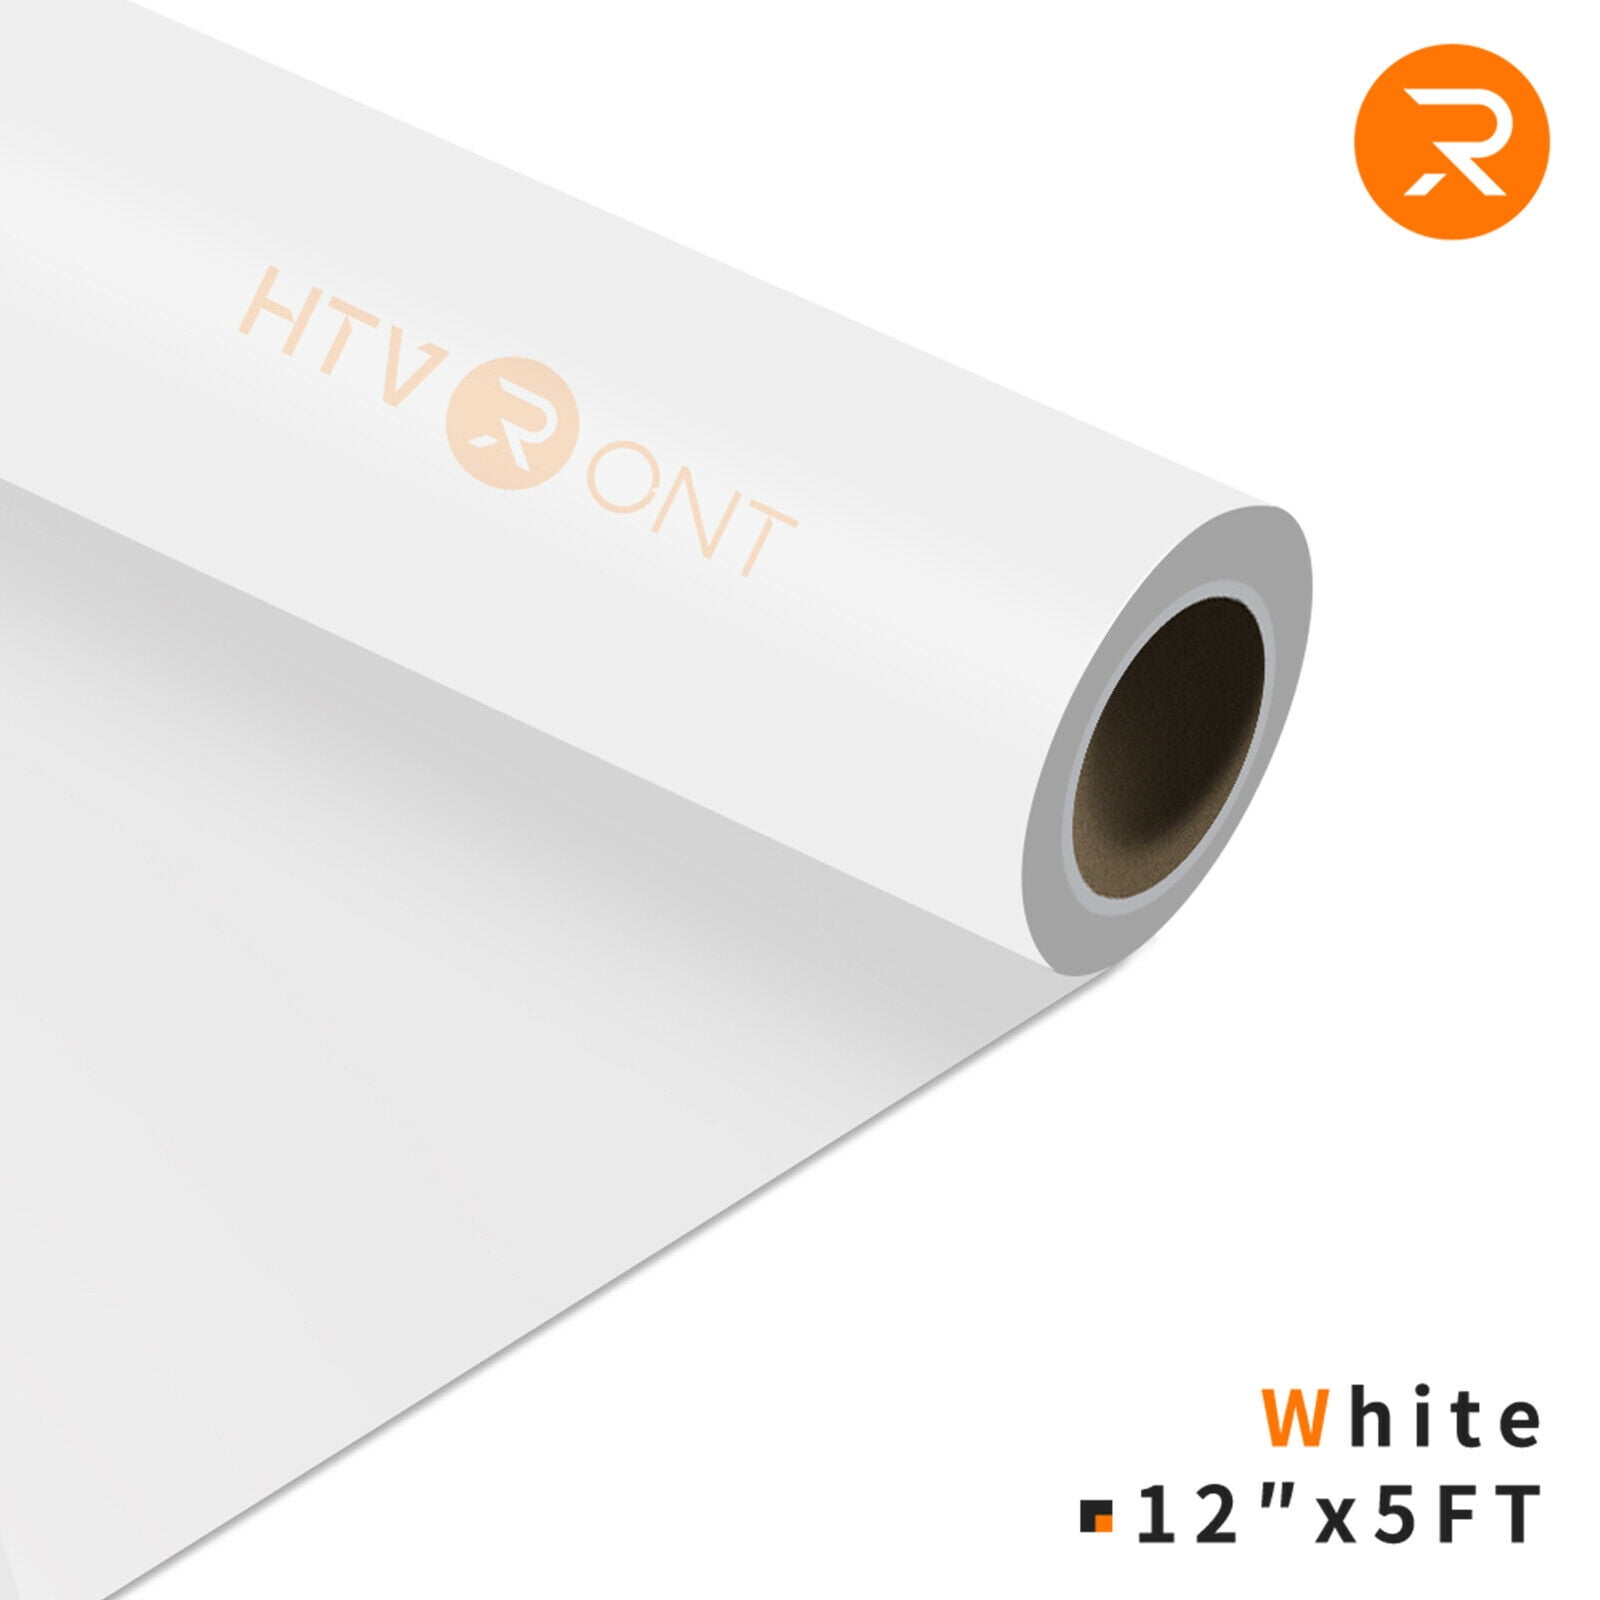 HTVRONT 12 x 5FT Heat Transfer Vinyl White HTV Rolls for T-Shirts